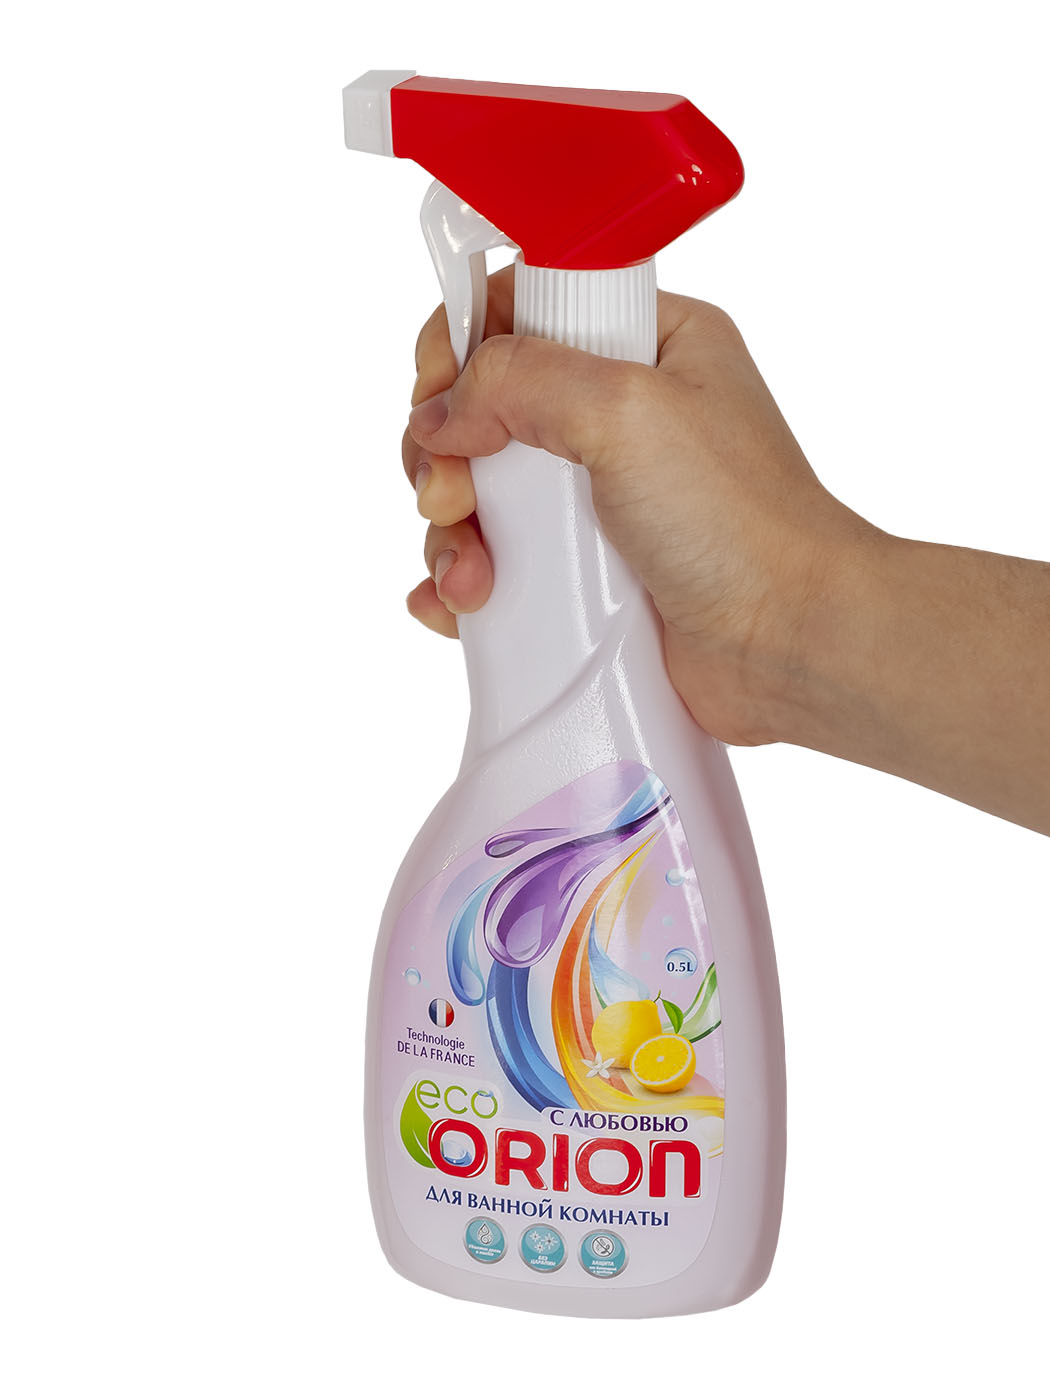 Картинка Средство для чистки ванной комнаты 500 мл Orion по разумной цене купить в интернет магазине mall.su